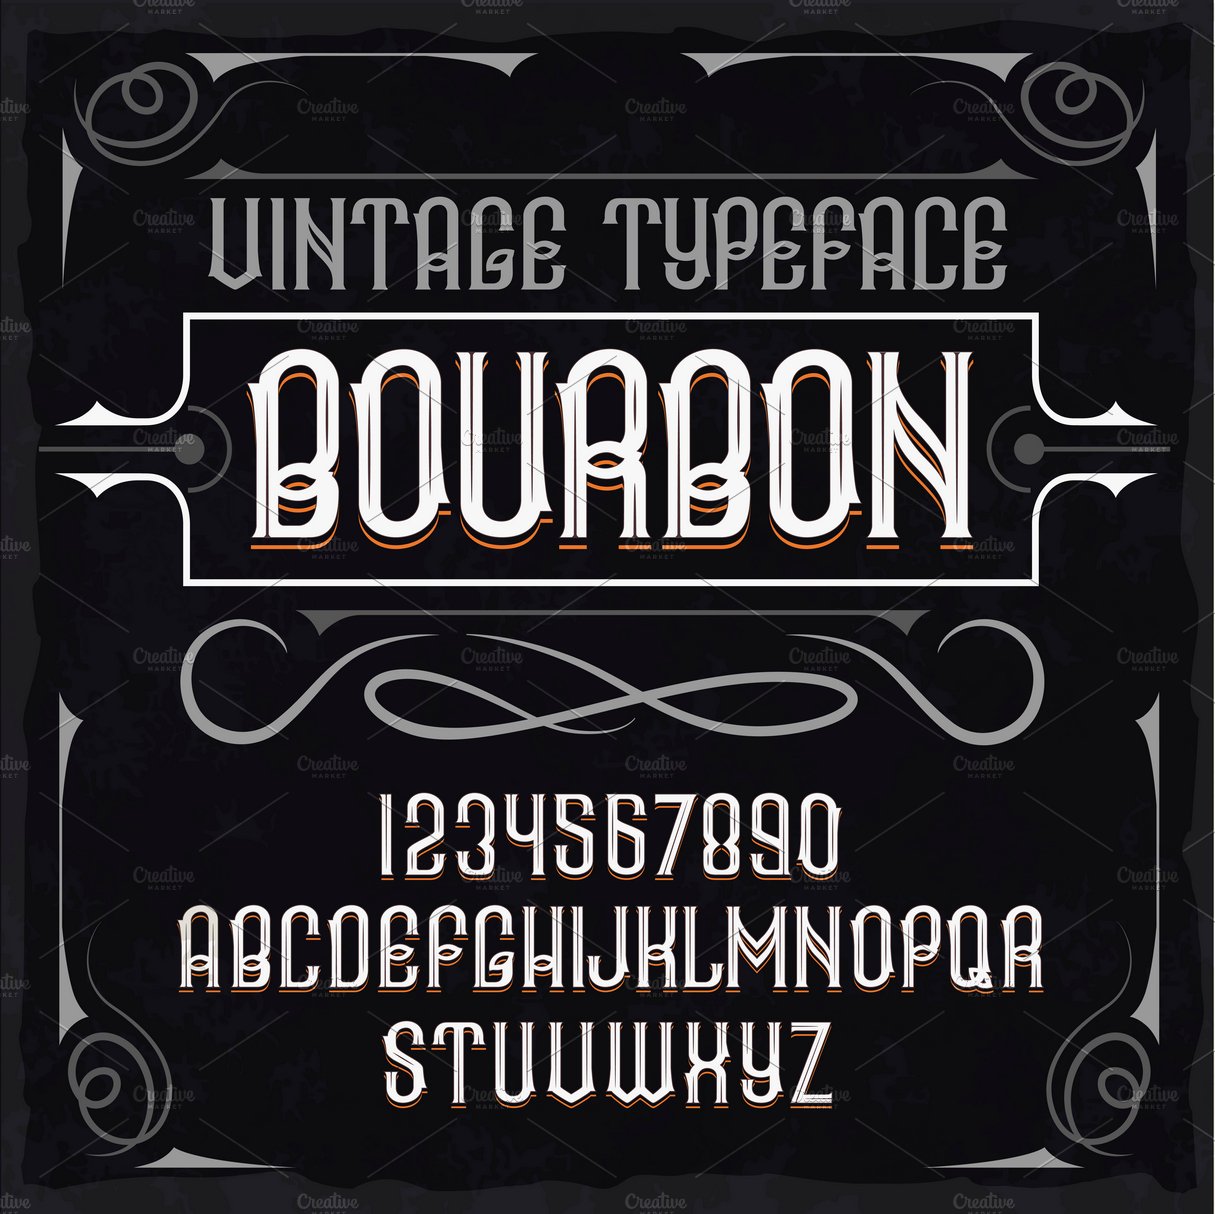 Vintage label typeface Bourbon cover image.